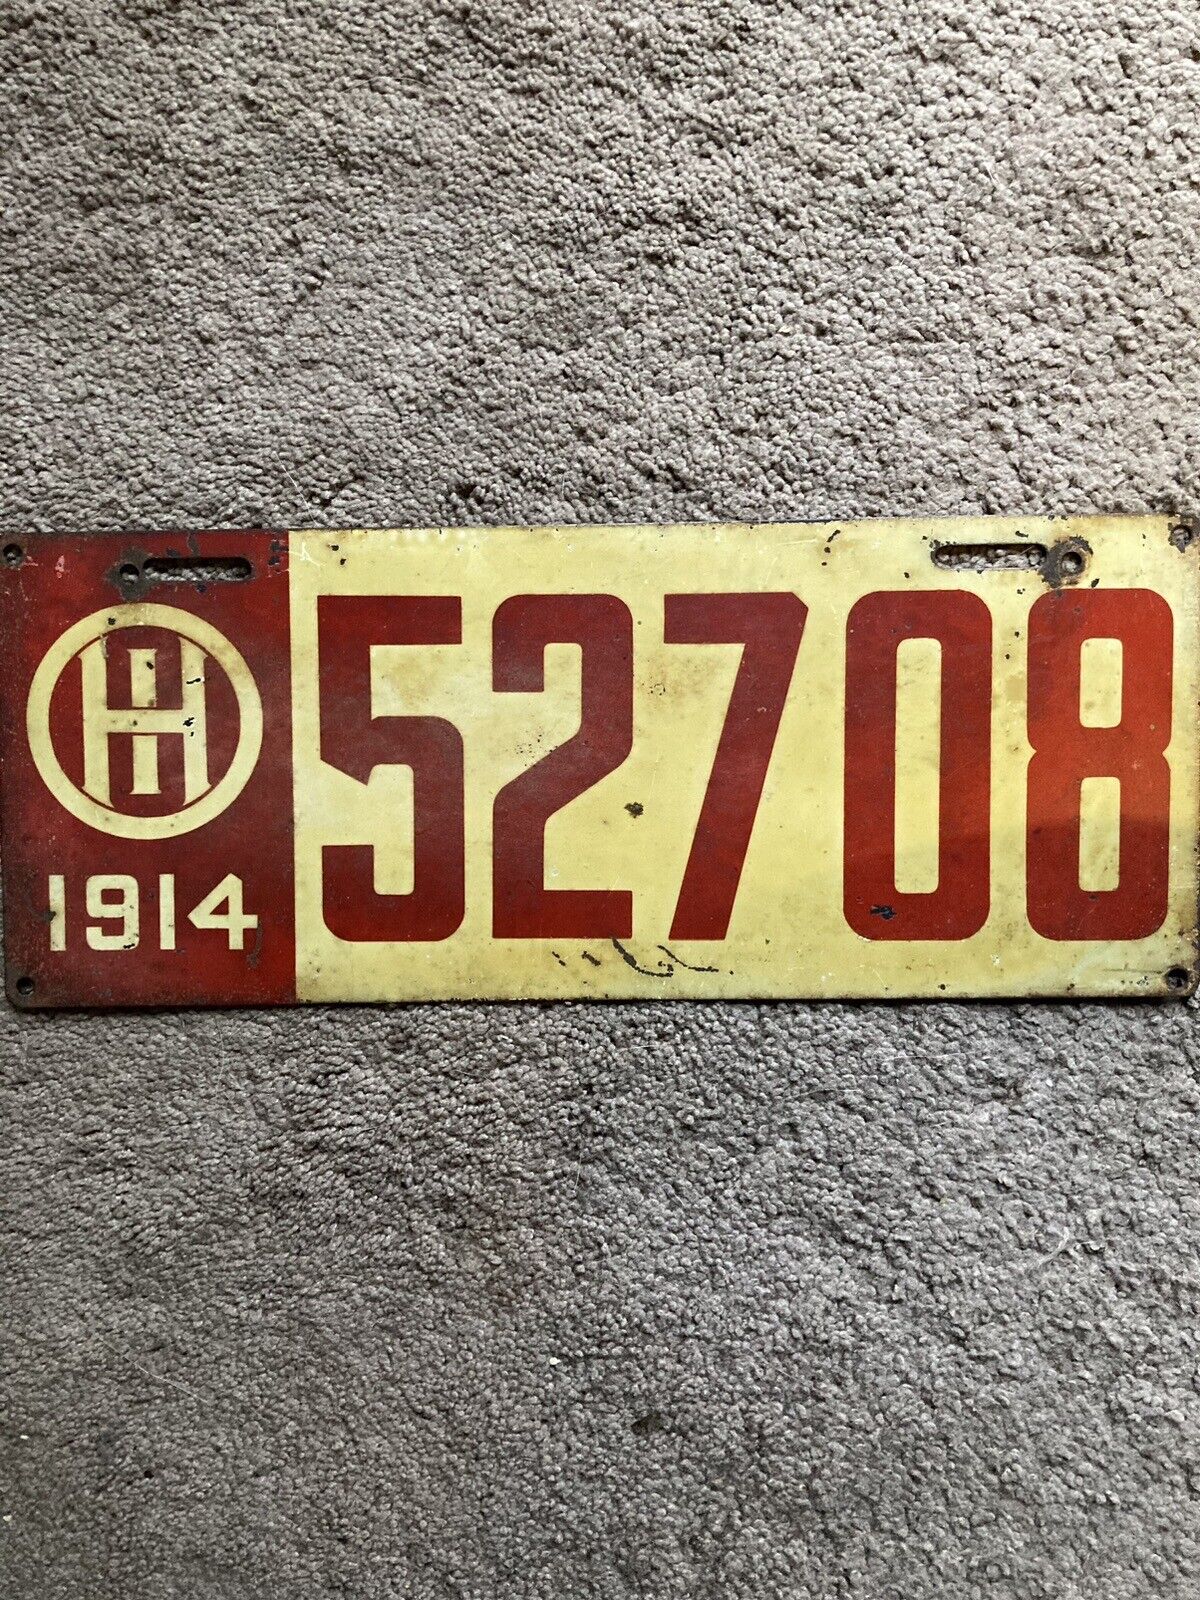 1914 Ohio License Plate - 52708 - Nice Oldie